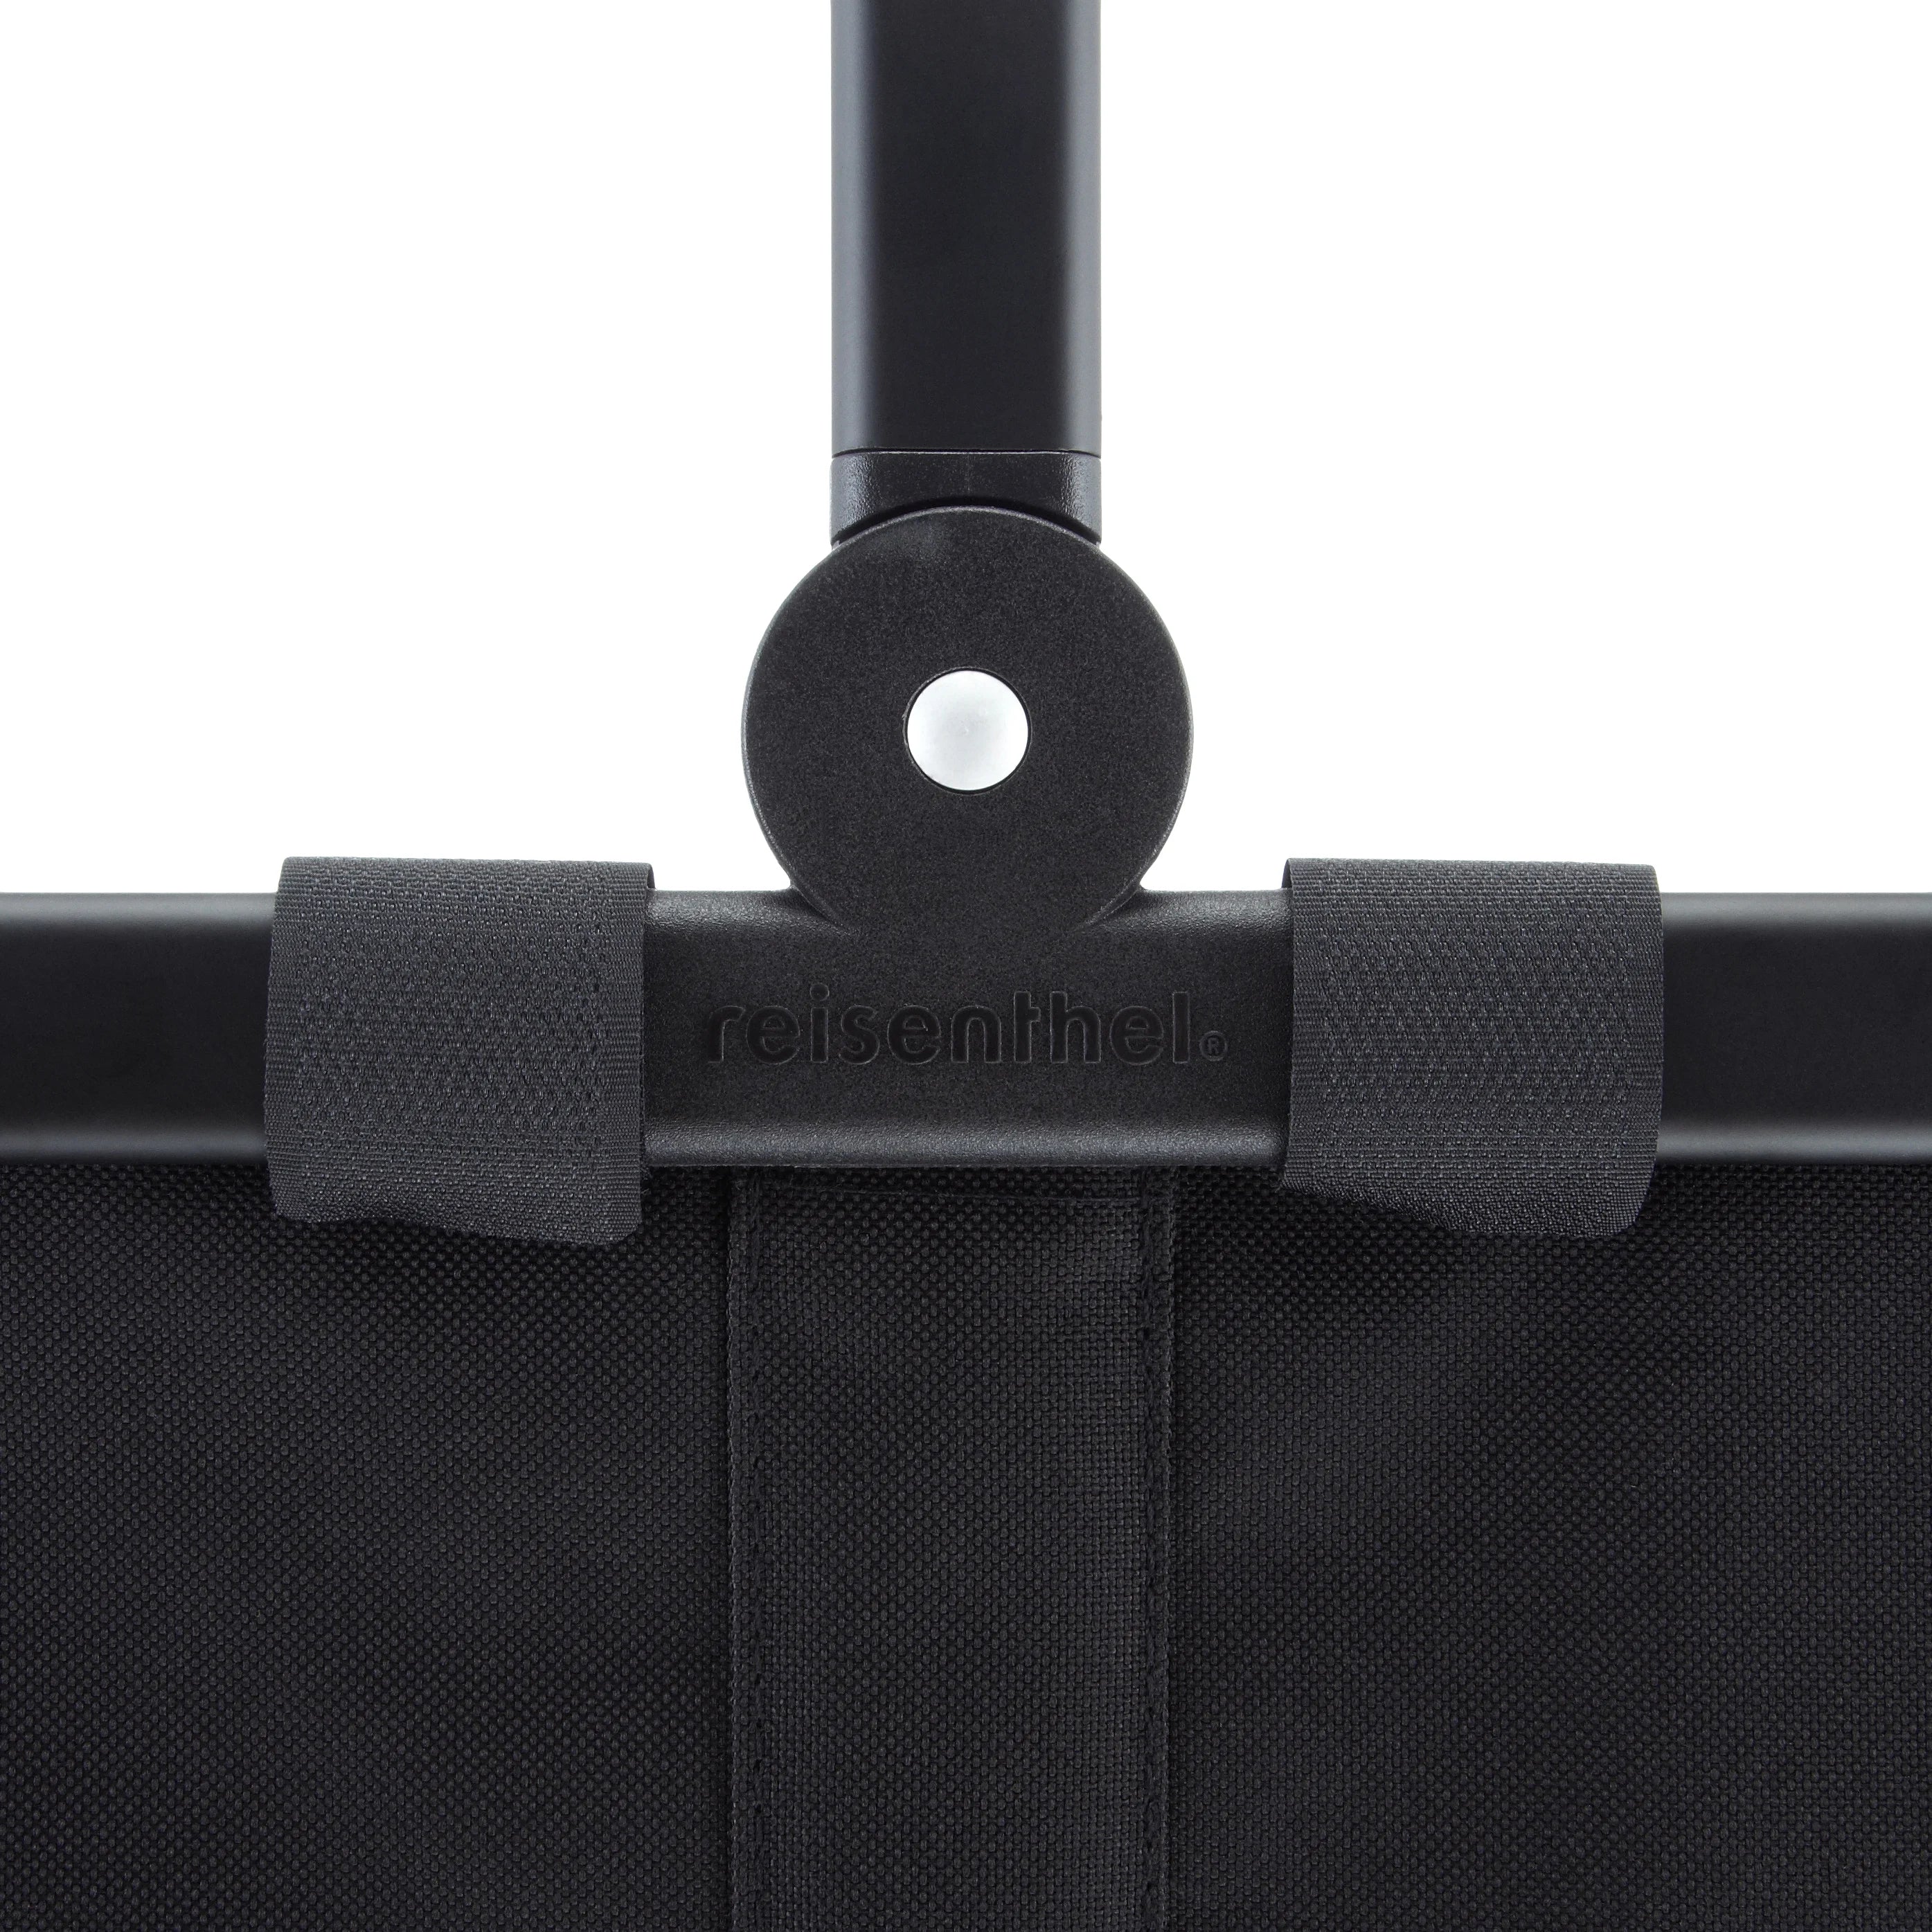 Reisenthel Shopping Carrybag Frame Einkaufkorb 48 cm - gold/black